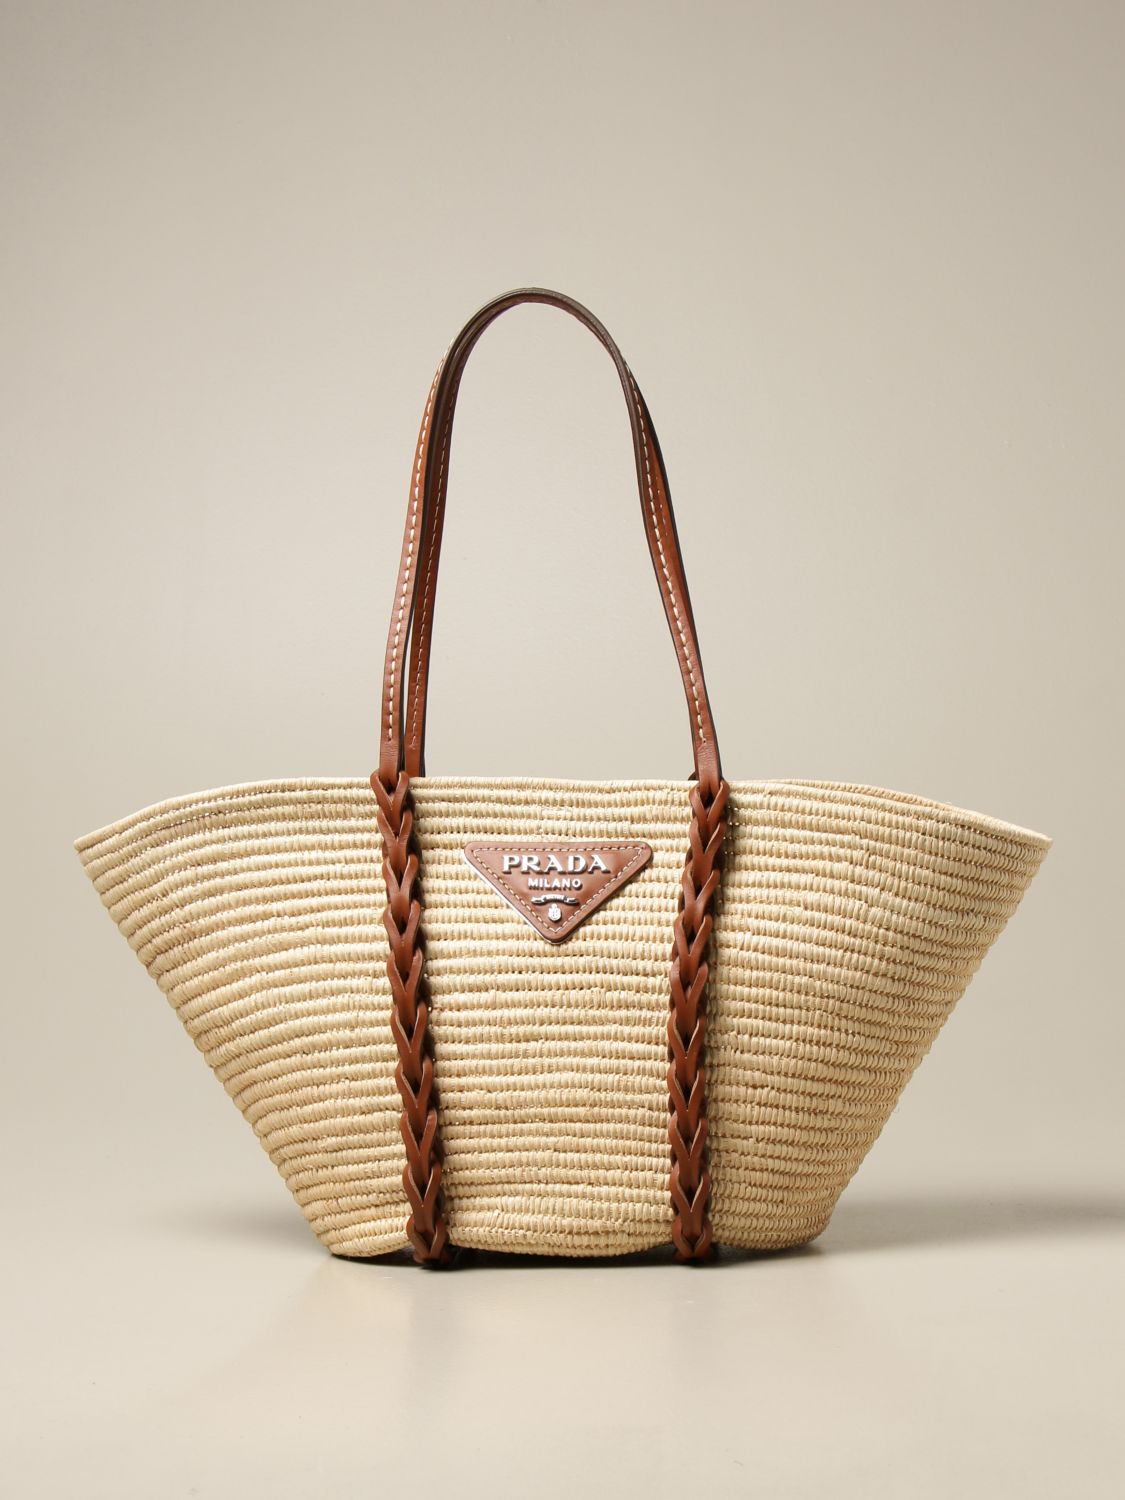 Prada Raffia Basket Tote Bag (Natural)